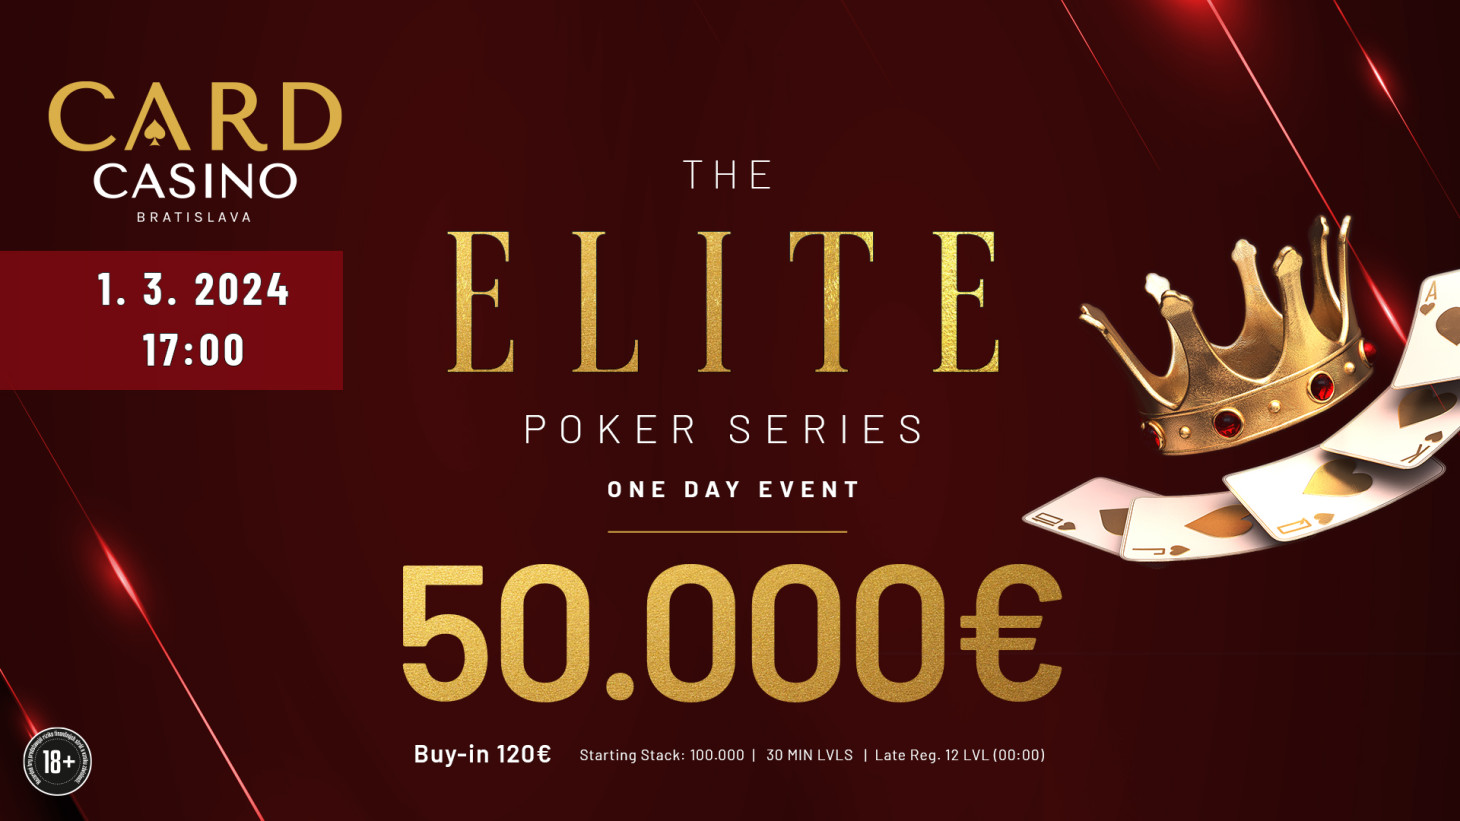 Eine vollgepackte Pokerwoche mit fast 100.000 € GTD! Sowohl Elite als auch Mystery Bounty werden gespielt